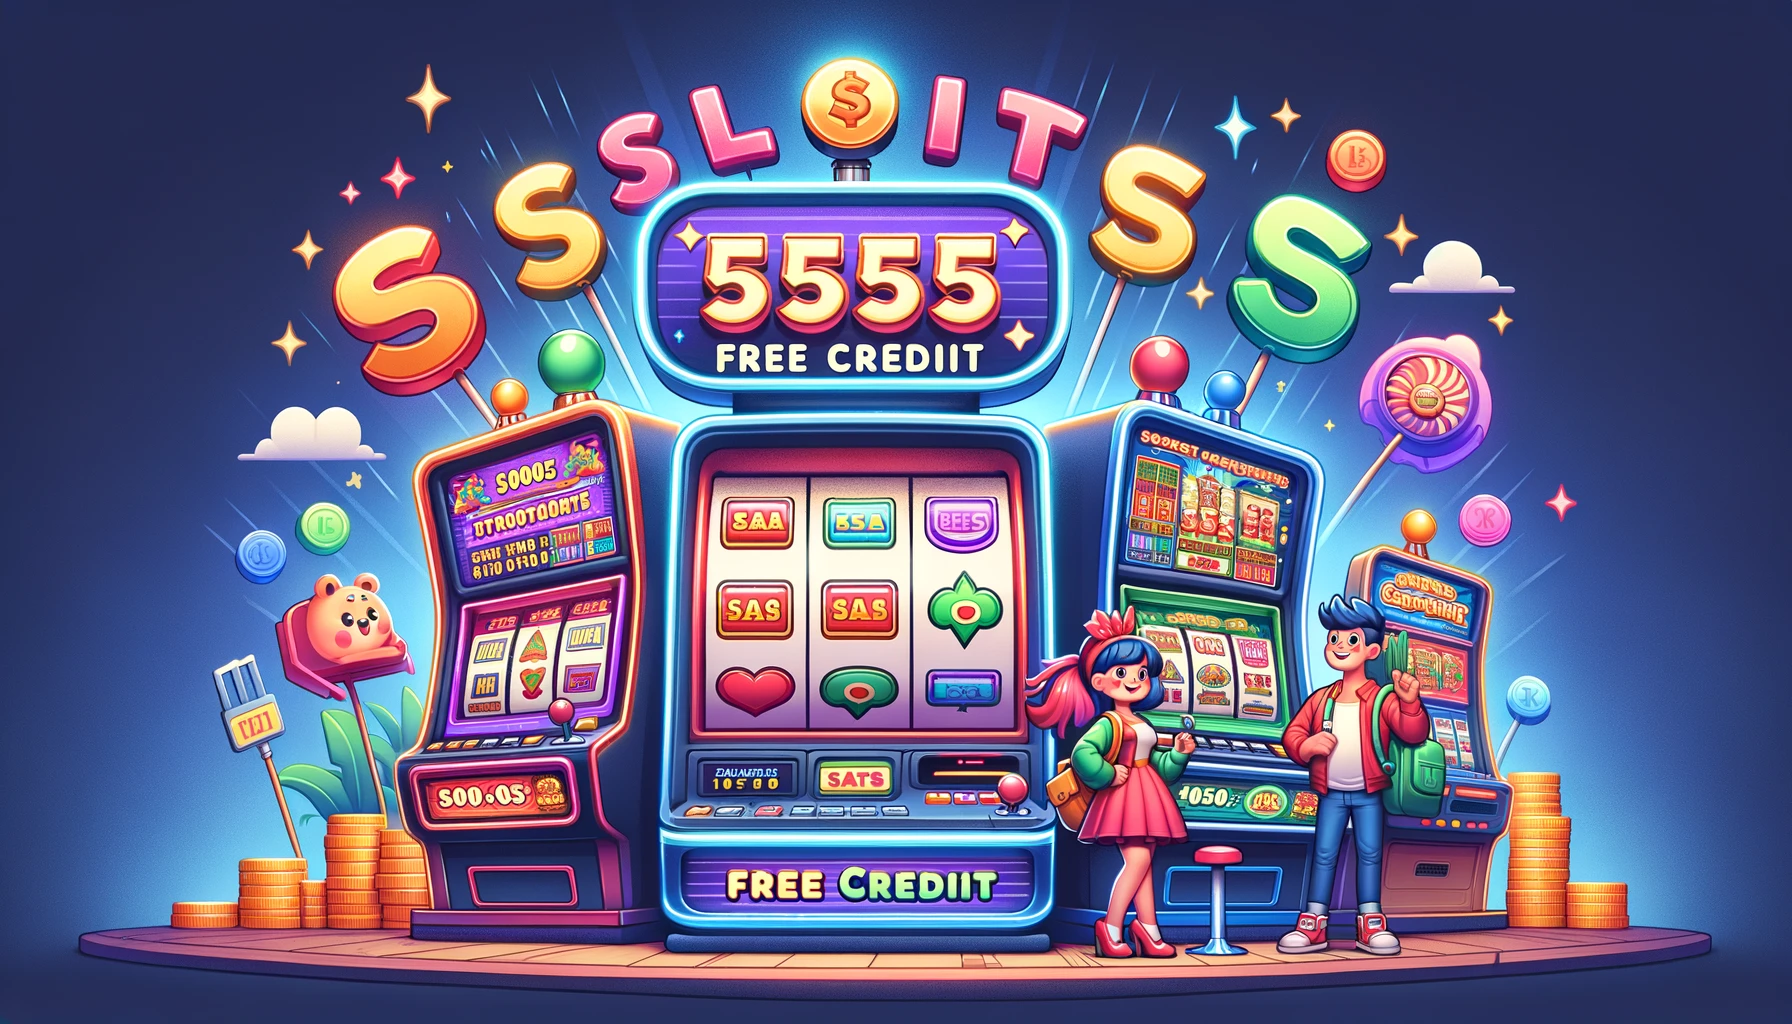 Slots 555 free credit